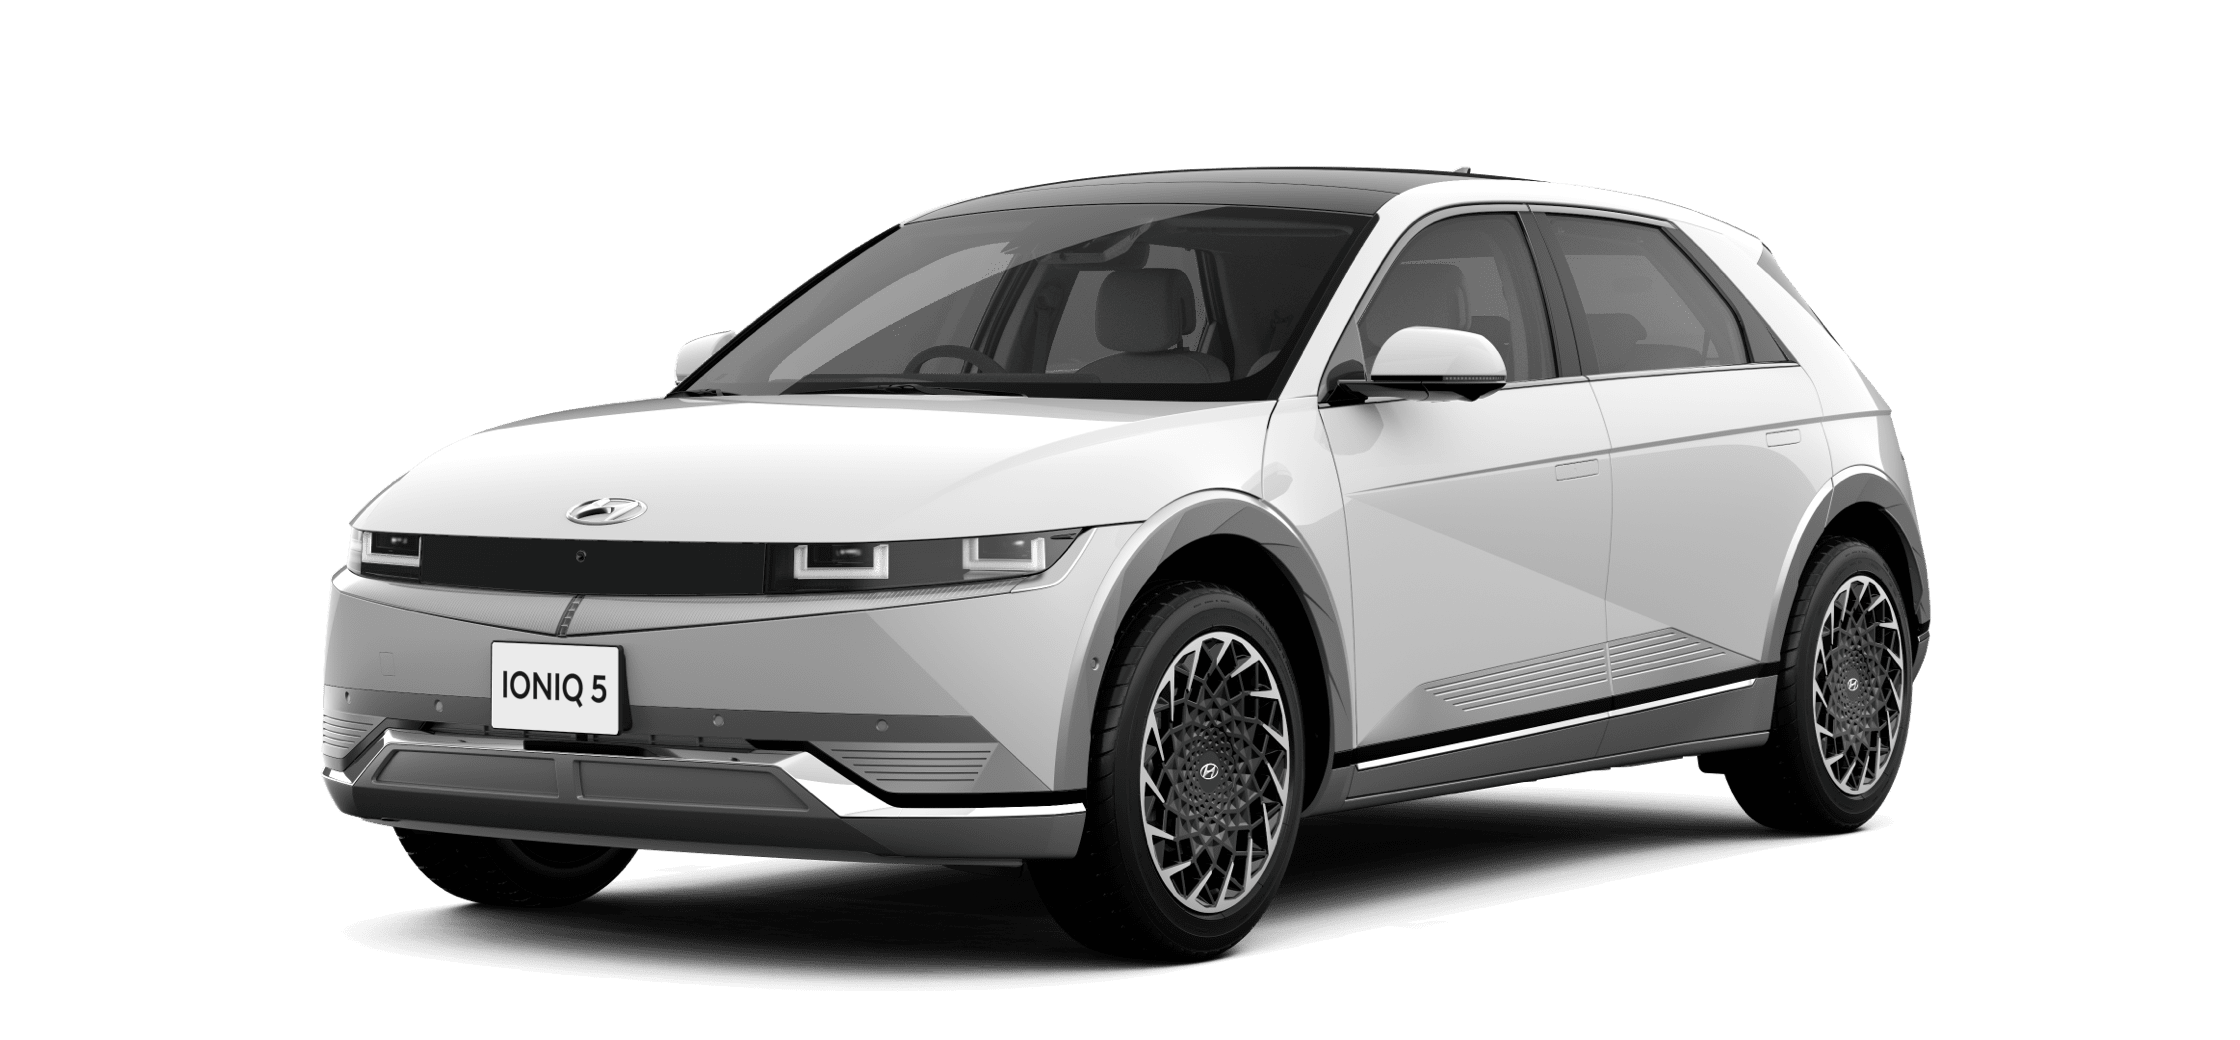 IONIQ 5 (アイオニック 5)電気自動車 EV デザイン - Hyundai Mobility Japan (ヒョンデモビリティジャパン)